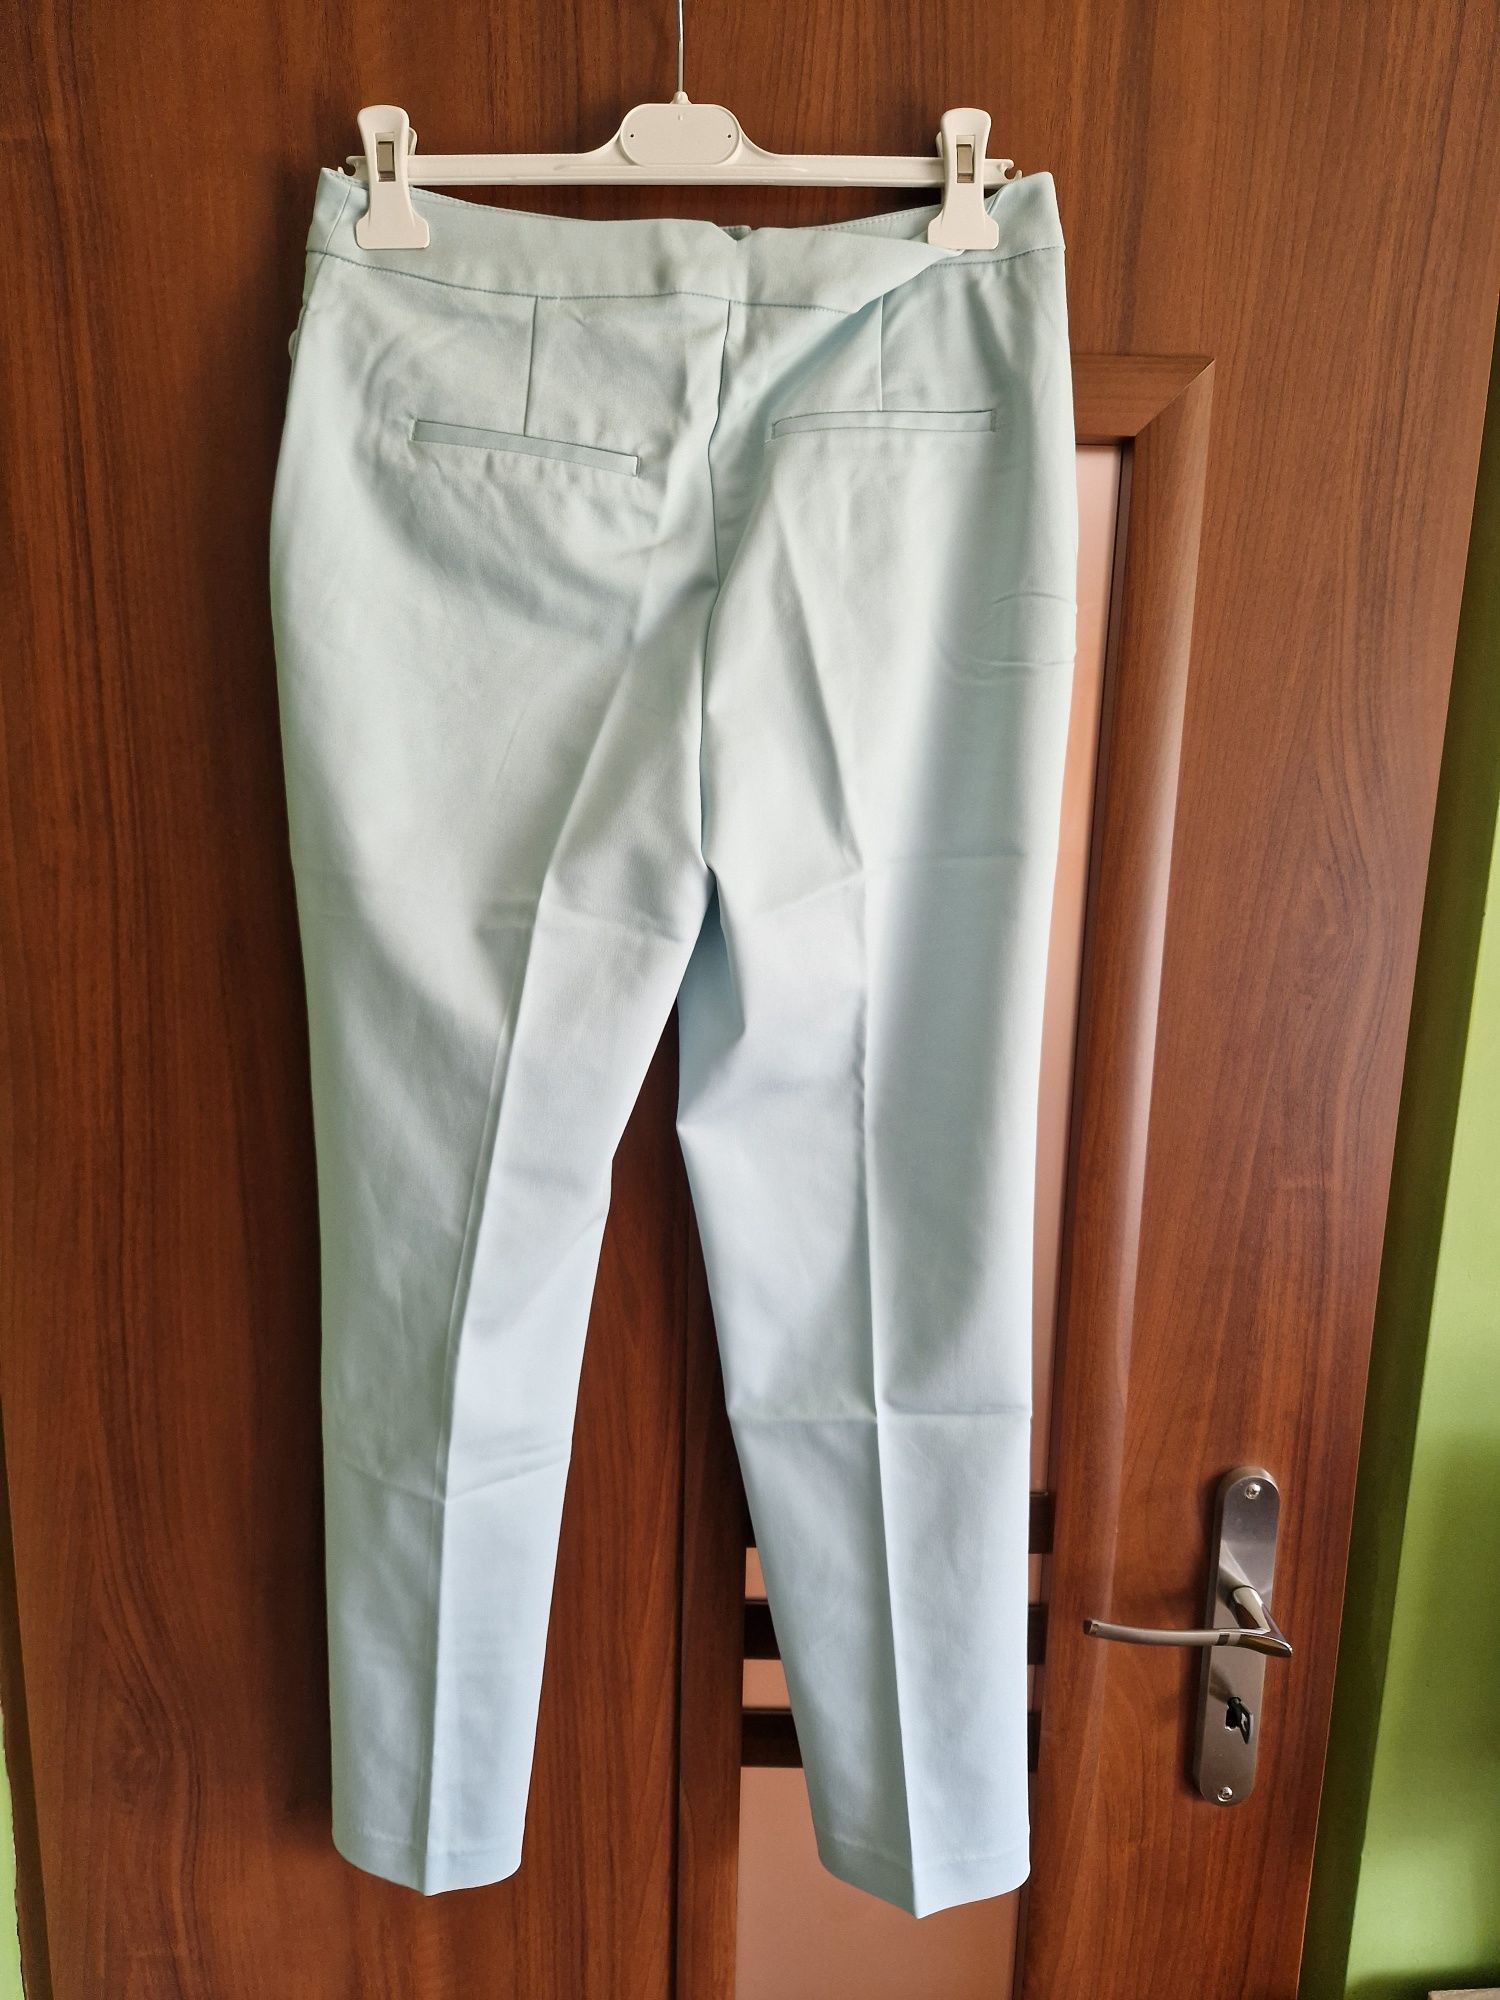 Garnitur damski Miętowy (żakiet 40 + spodnie 38)